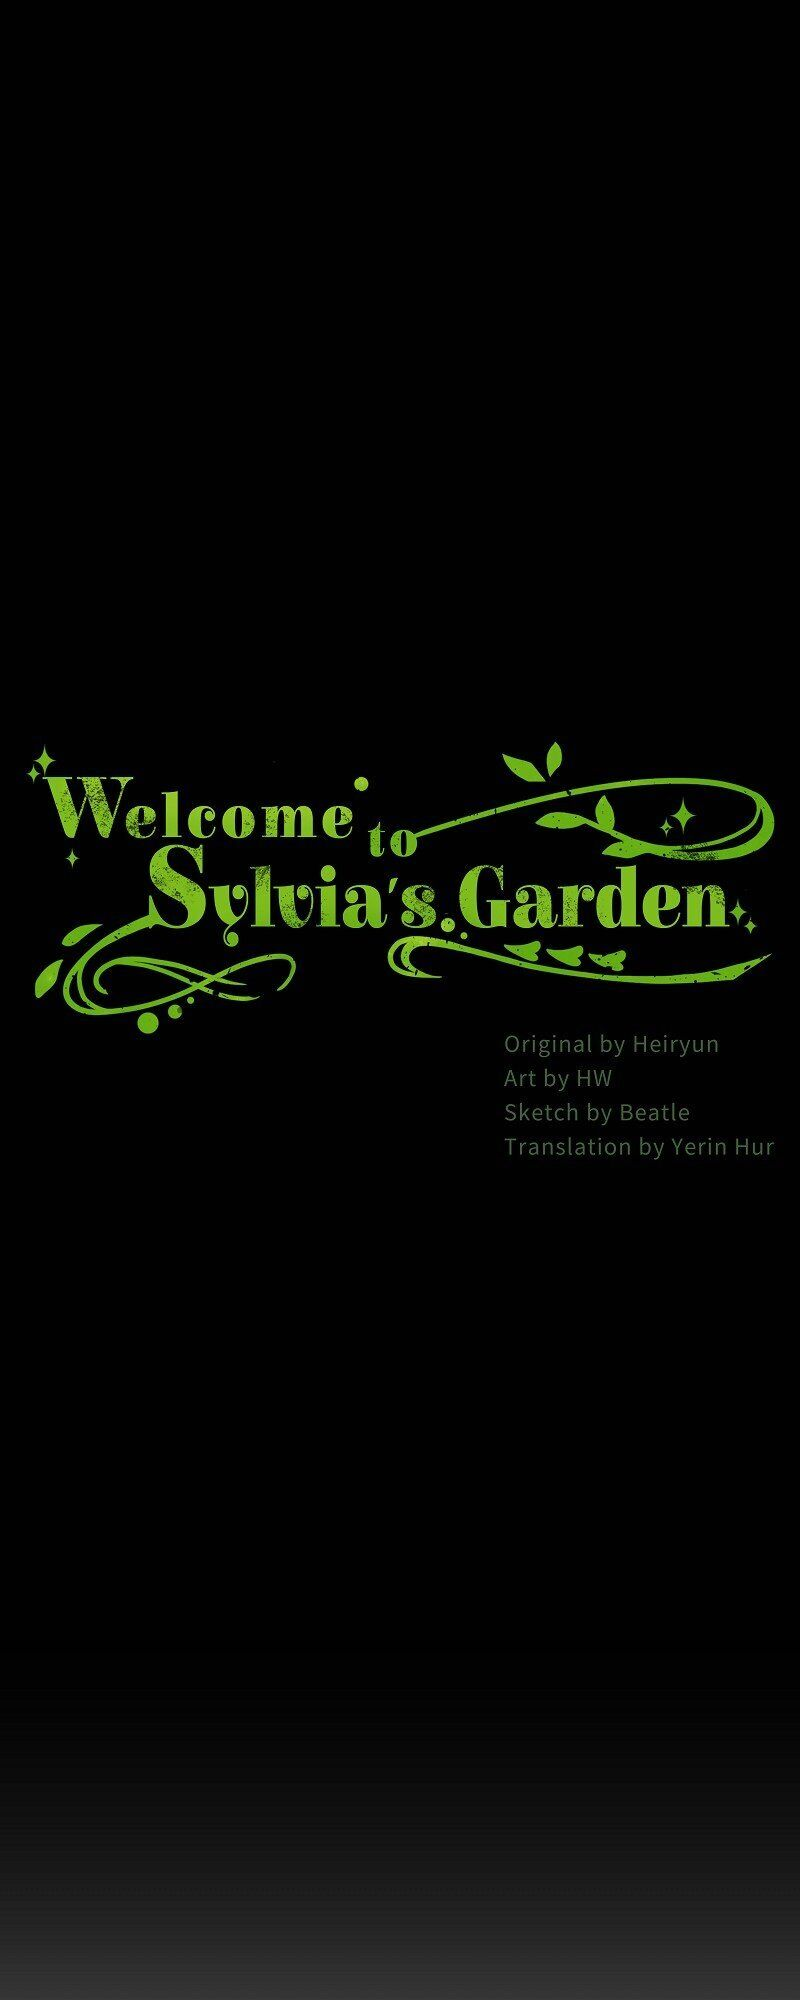 Welcome to Sylvia’s Garden 7 (2)